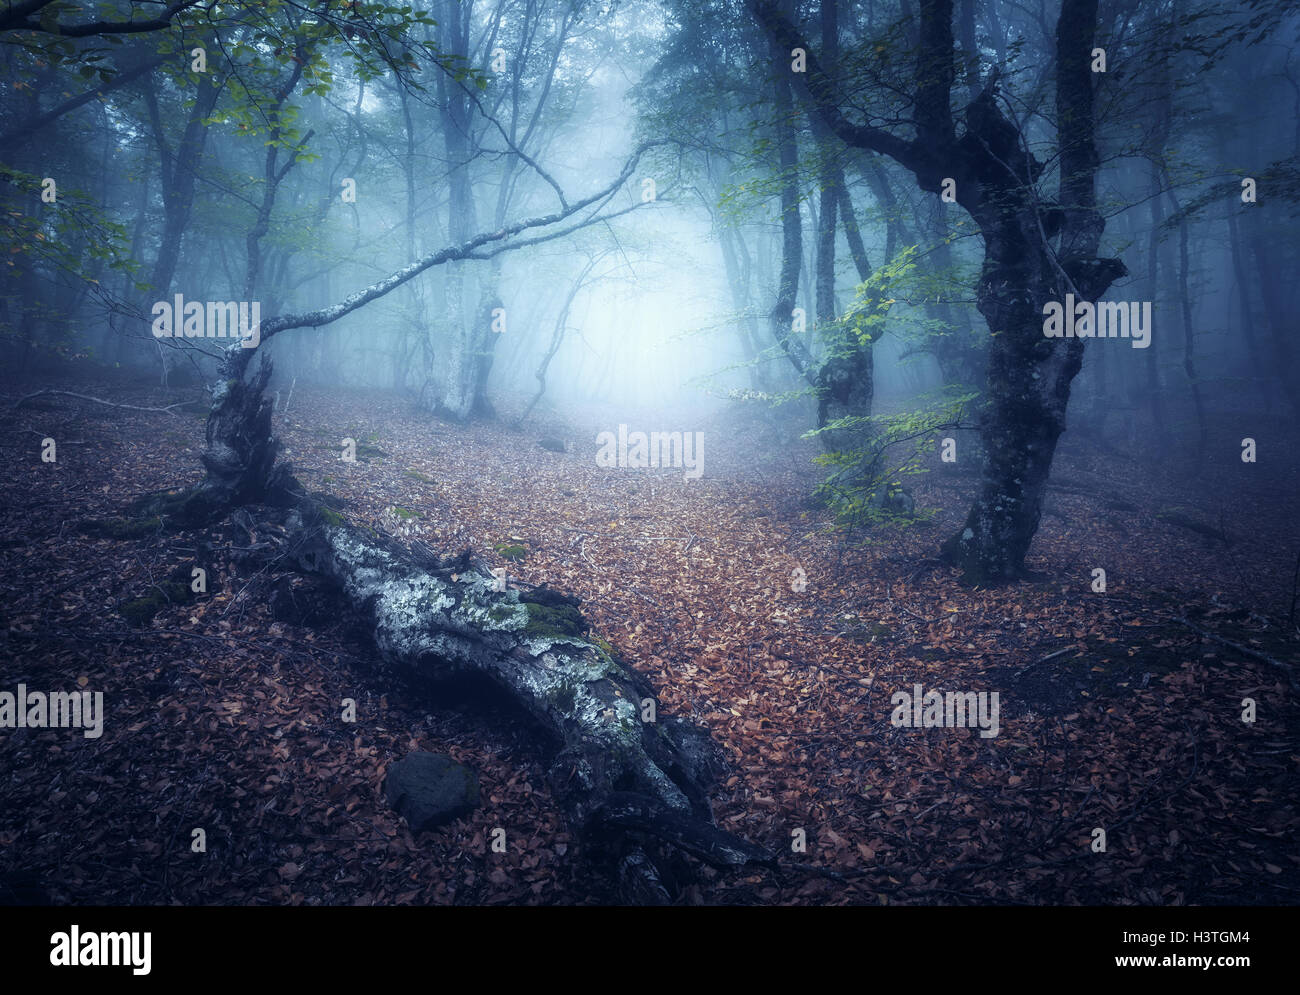 Foresta di caduta nella nebbia. Mistica foresta autunnale con il sentiero nella nebbia. Vecchio albero. Bel paesaggio con alberi, log, percorso, foglie d'arancio Foto Stock